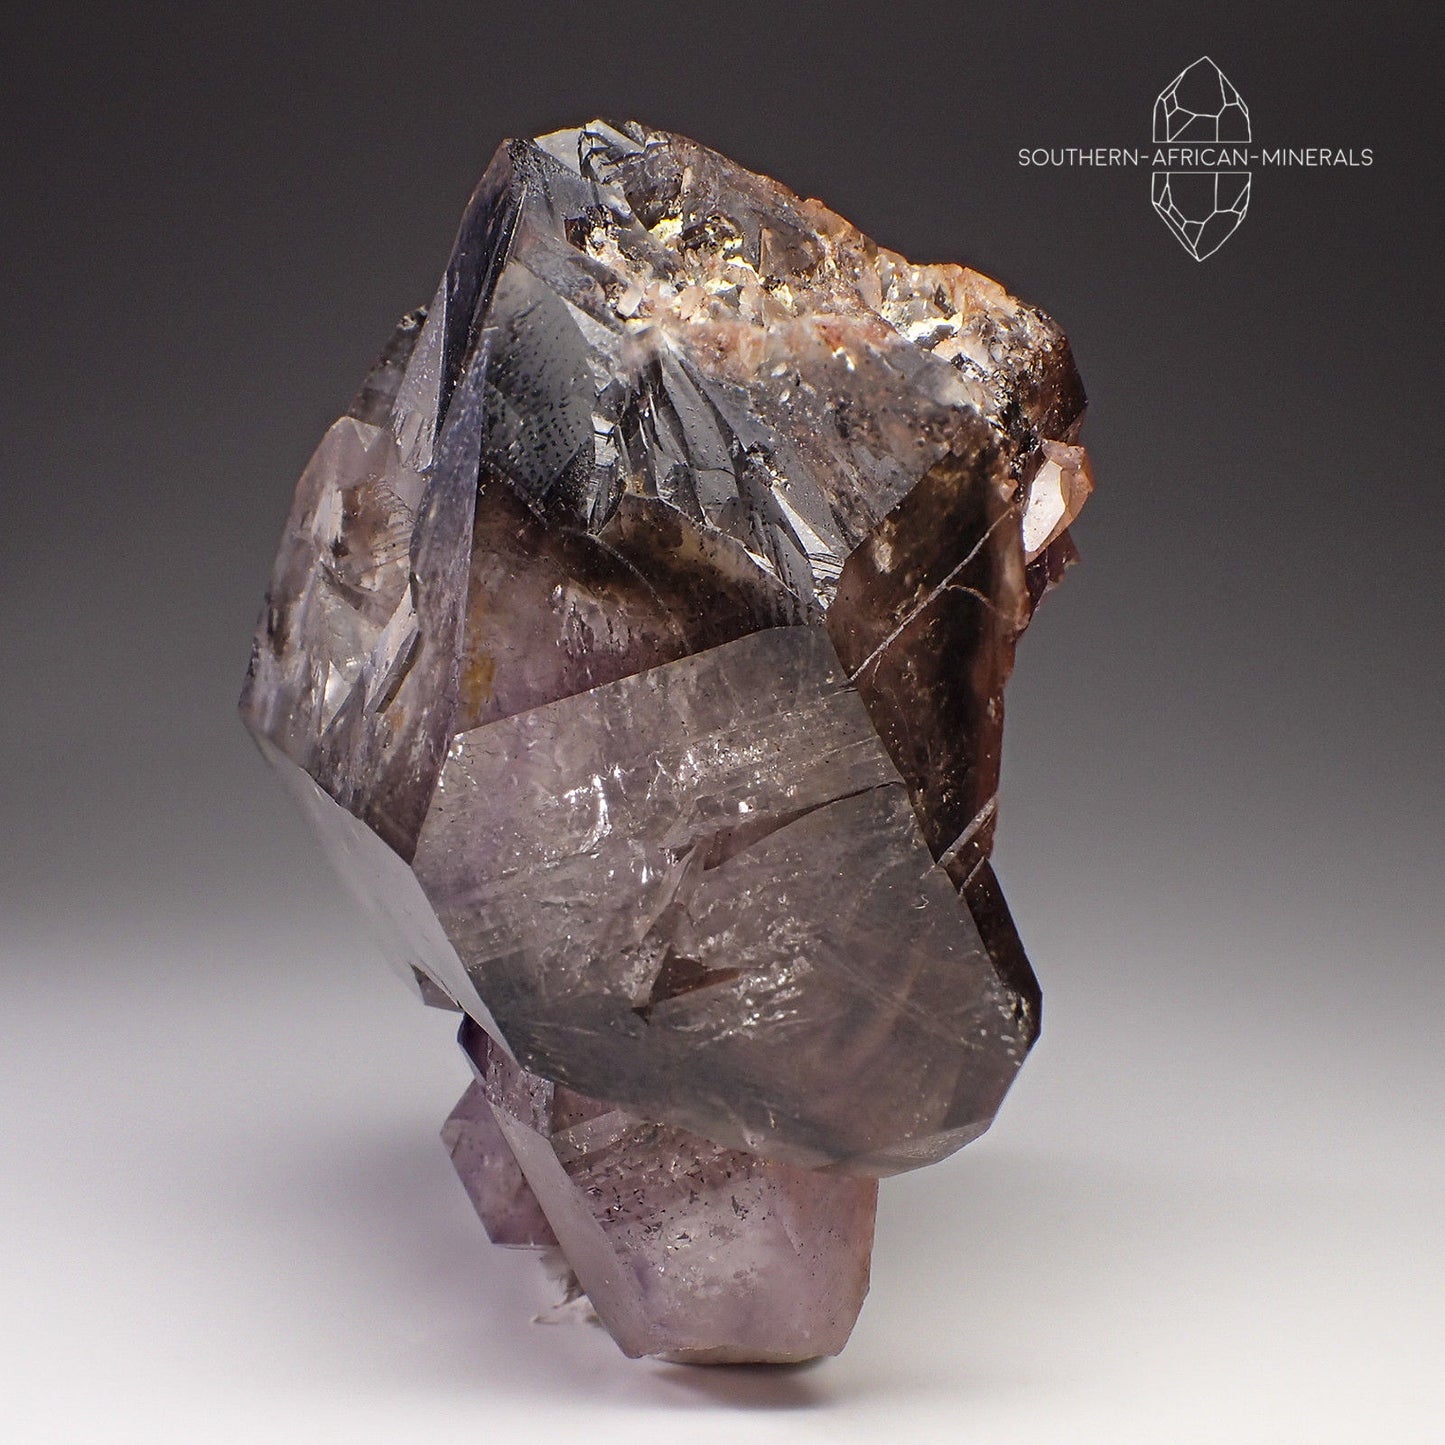 Brandberg Amethyst Smoky Elestial Quartz Crystal, Goboboseb, Namibia